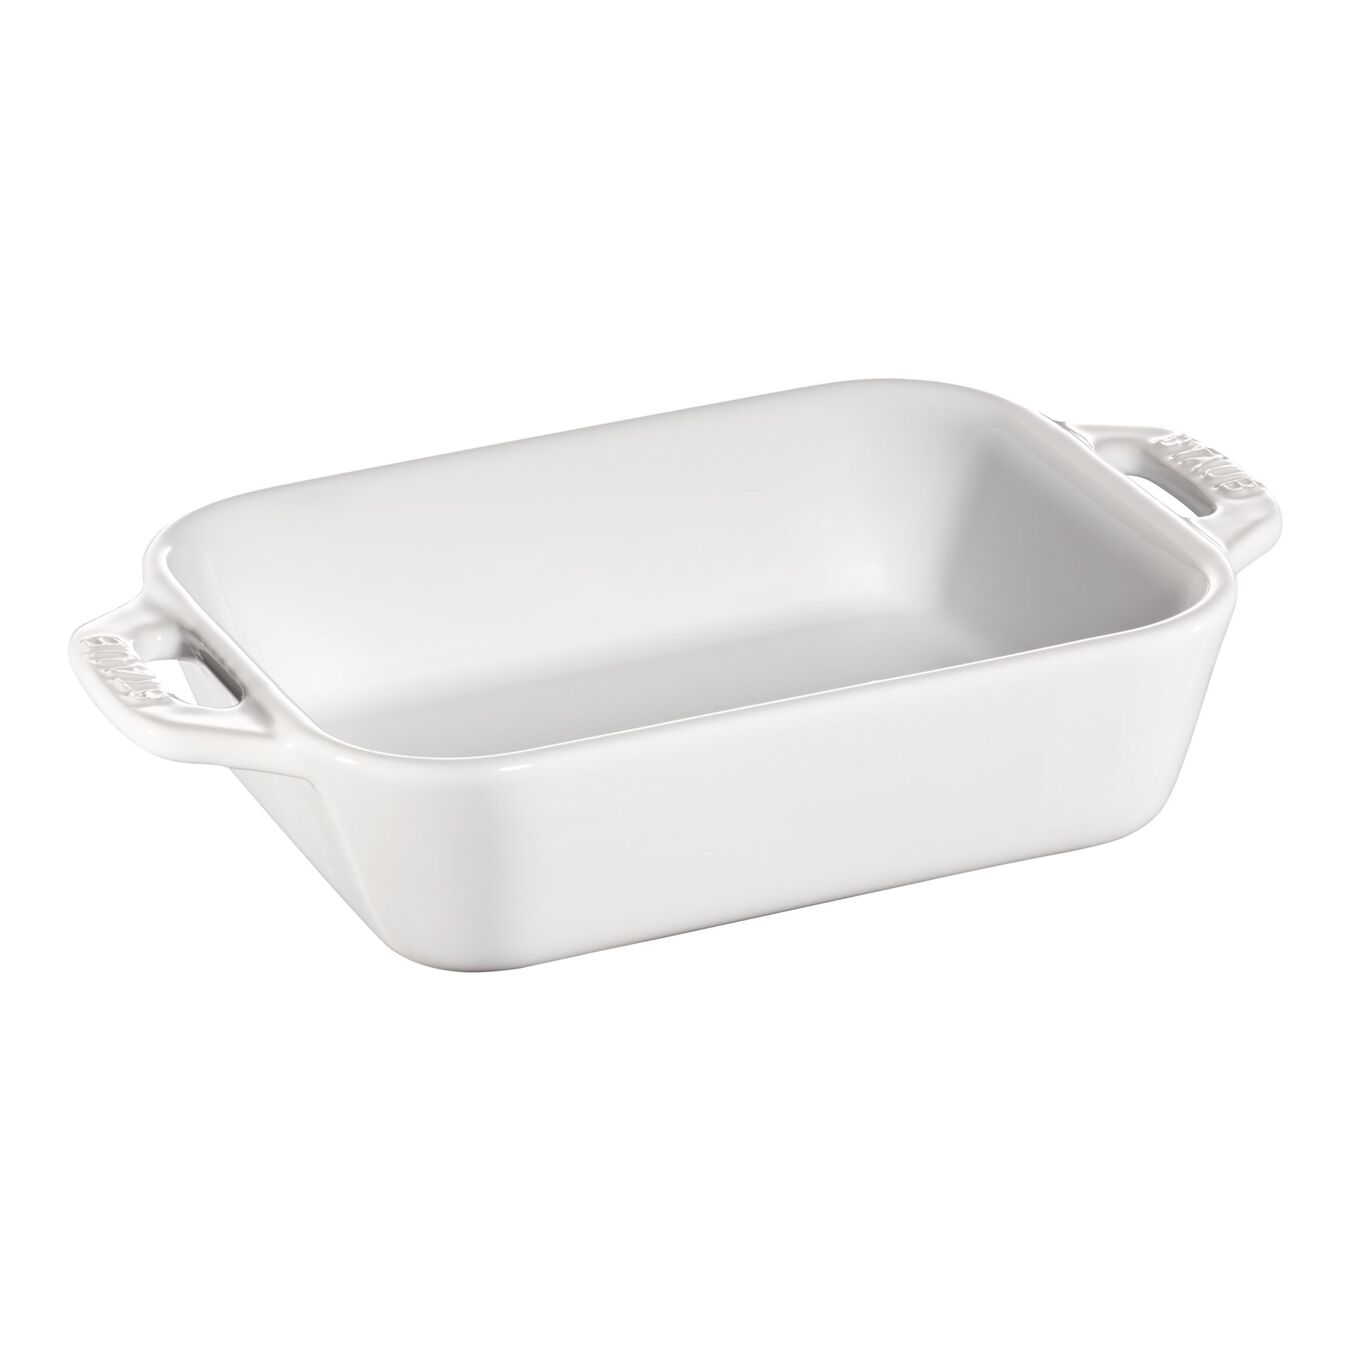 14 cm x 11 cm rectangular Ceramic Oven dish pure-white,,large 1